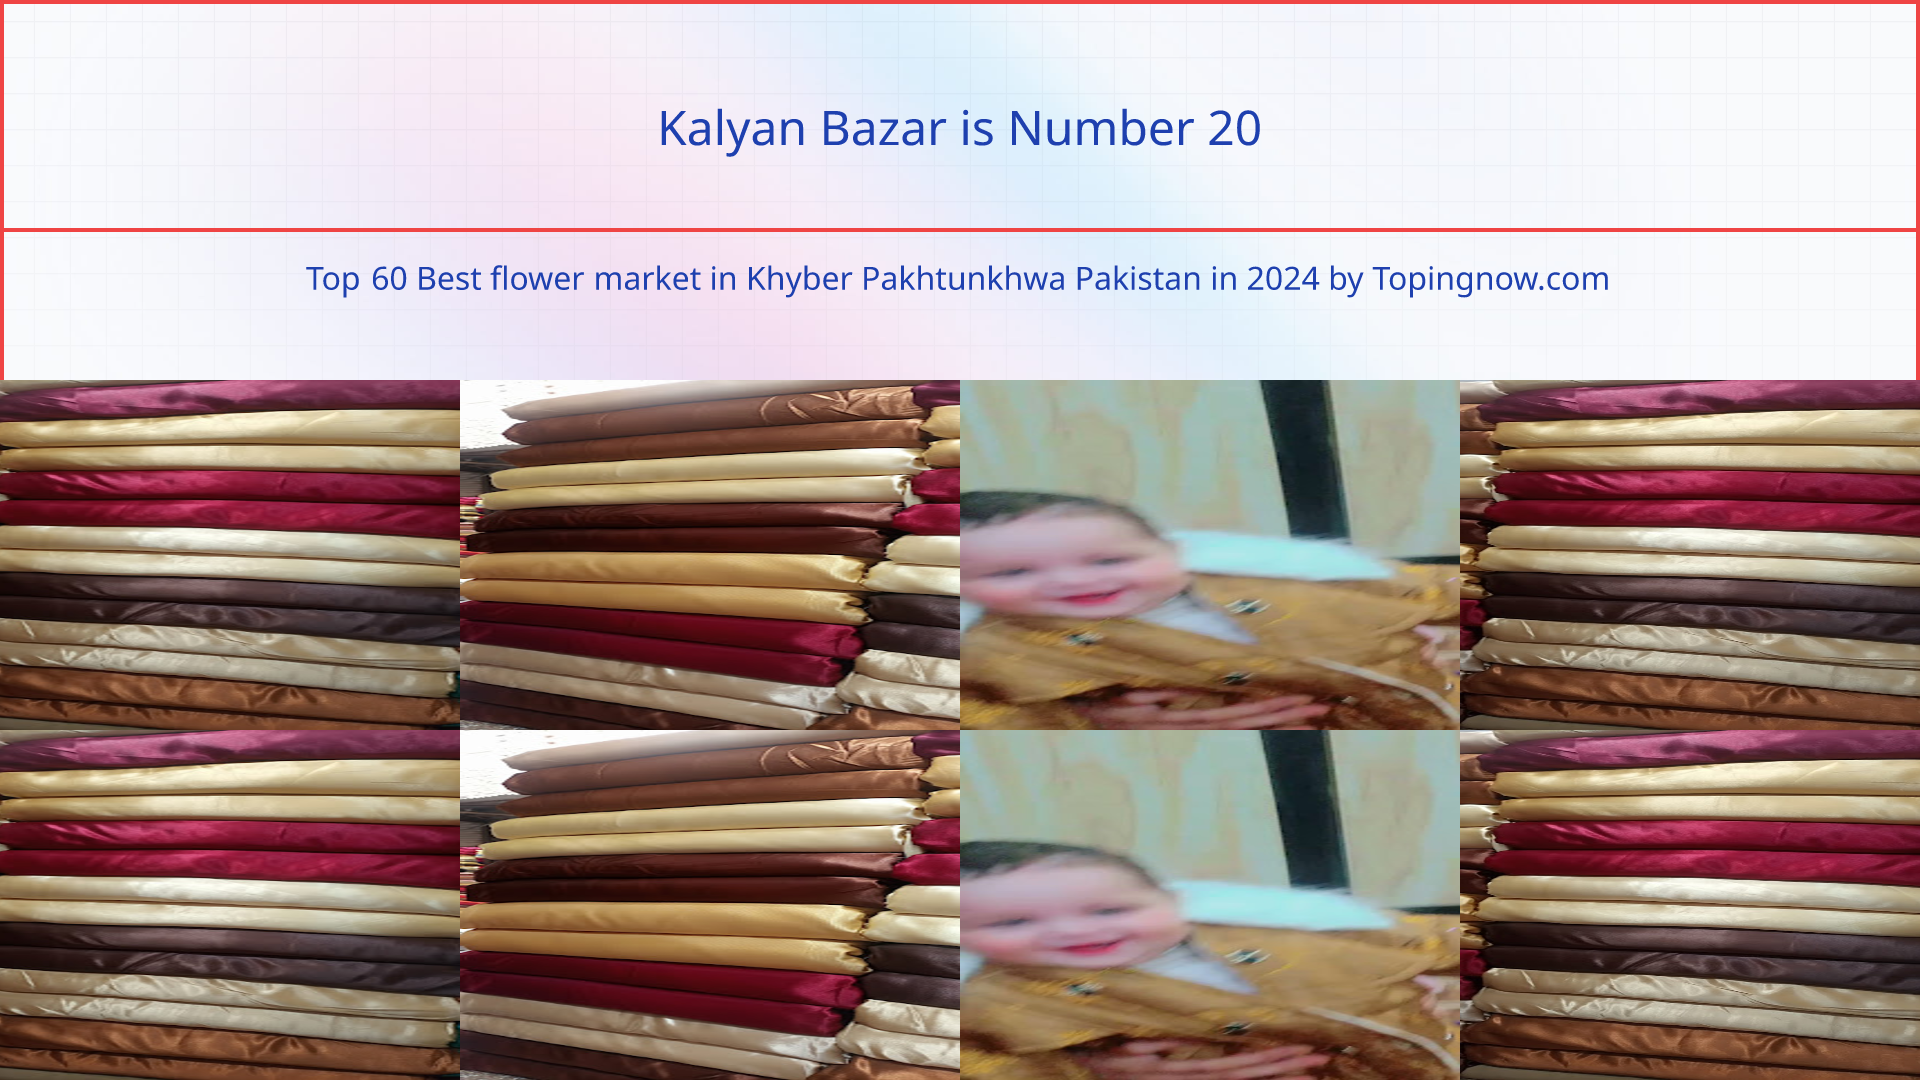 Kalyan Bazar: Top 60 Best flower market in Khyber Pakhtunkhwa Pakistan in 2024